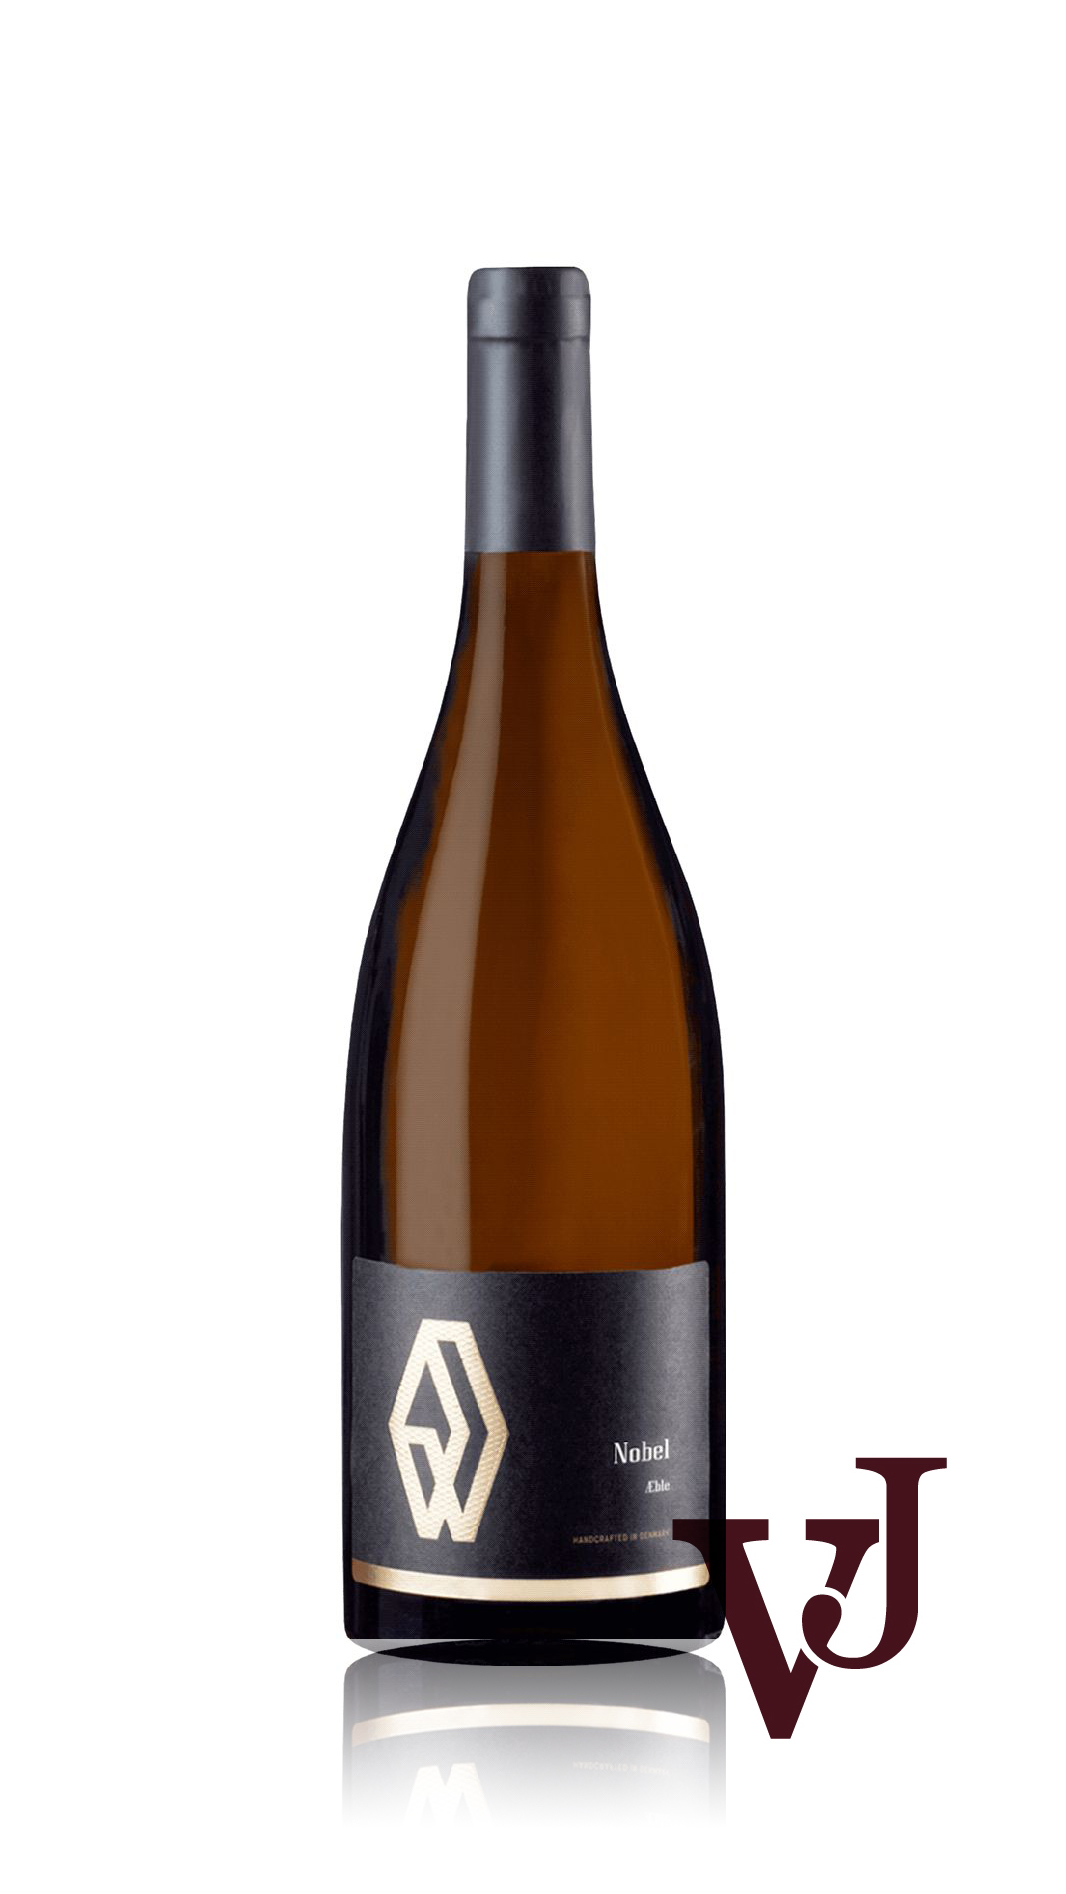 Övrigt Vin - Nobel Stilla Äppelvin 2021 artikel nummer 7355001 från producenten Andersen Winery från Danmark.